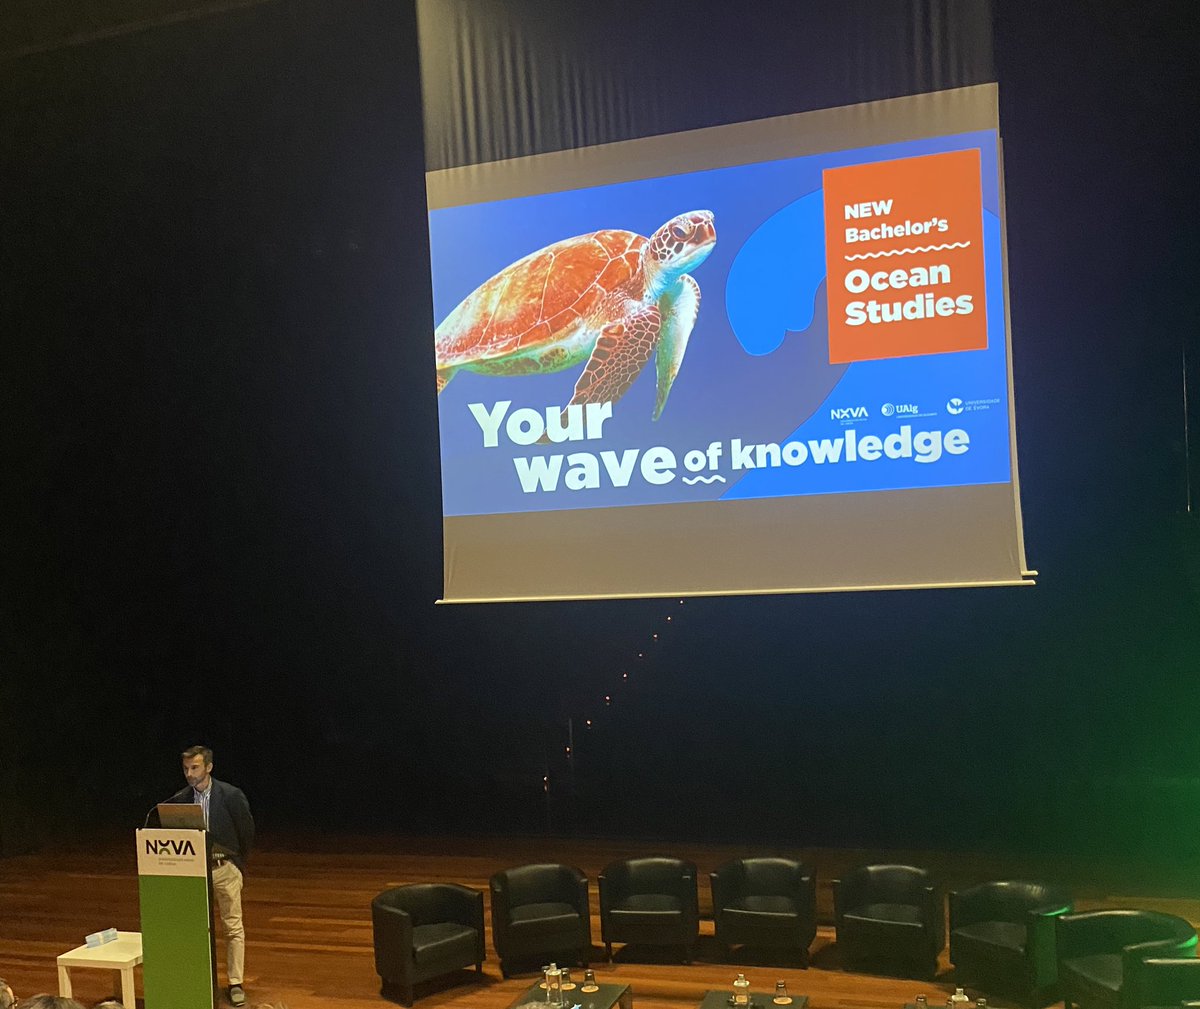 En el marco del “Dia Nacional do Mar”,  la Universidad Nova y las Universidades de Algarve y Evora presenta la nueva licenciatura en Ocean Studies con enfoque interdisciplinario y completamente en inglés 🌊 #thefutureisblue